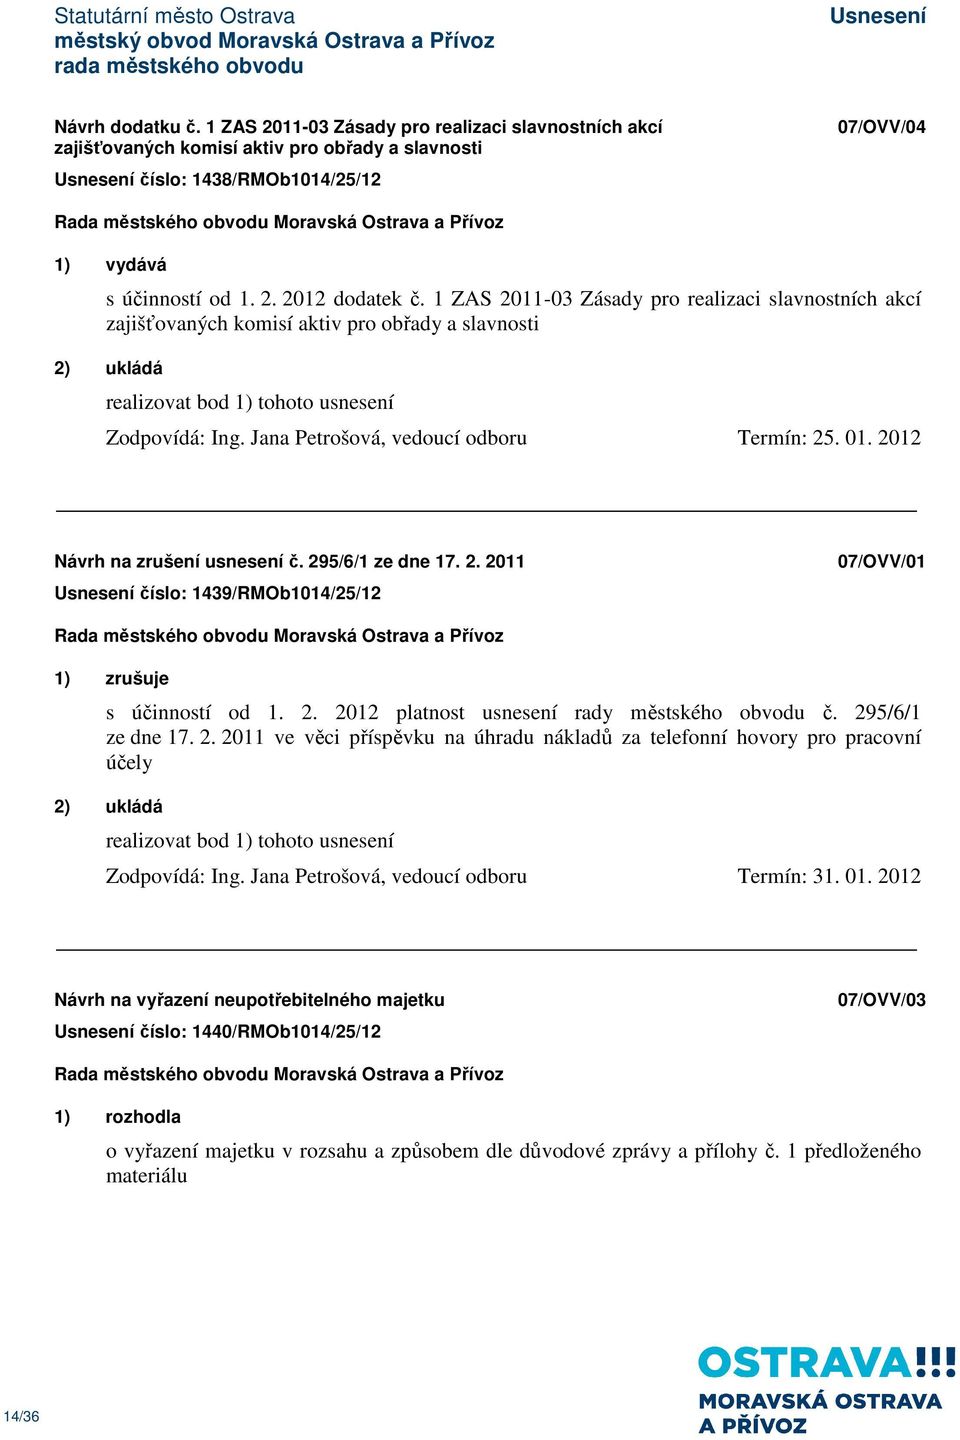 2012 Návrh na zrušení usnesení č. 295/6/1 ze dne 17. 2. 2011 číslo: 1439/RMOb1014/25/12 07/OVV/01 1) zrušuje s účinností od 1. 2. 2012 platnost usnesení rady městského obvodu č. 295/6/1 ze dne 17. 2. 2011 ve věci příspěvku na úhradu nákladů za telefonní hovory pro pracovní účely 2) ukládá Zodpovídá: Ing.